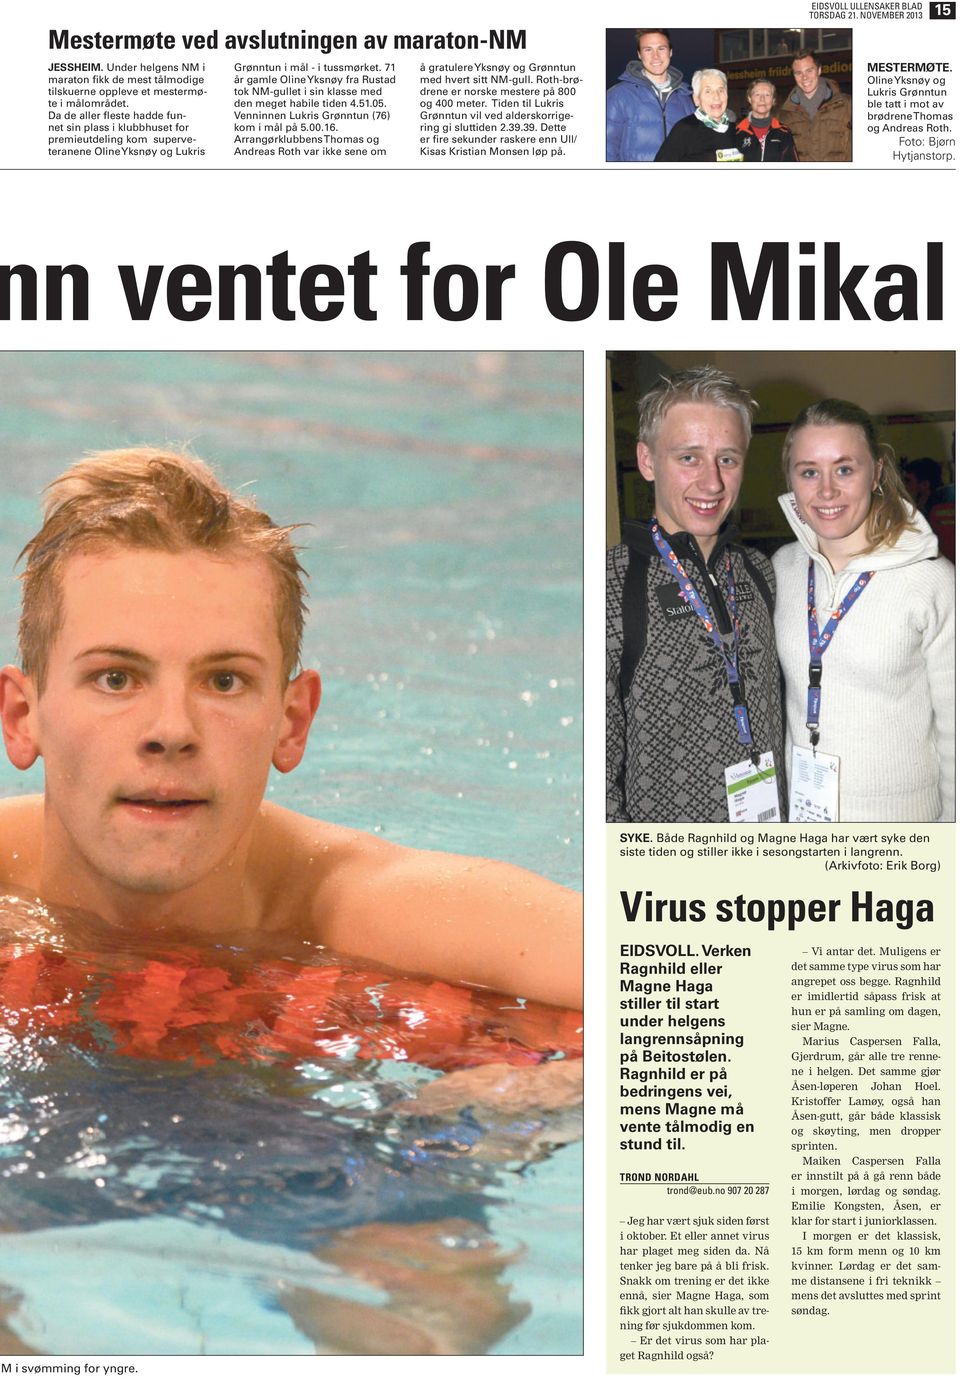 71 år gamle Oline Yksnøy fra Rustad tok NM-gullet i sin klasse med meget habile ti 4.51.05. Venninnen Lukris Grønntun (76) k i mål på 5.00.16.